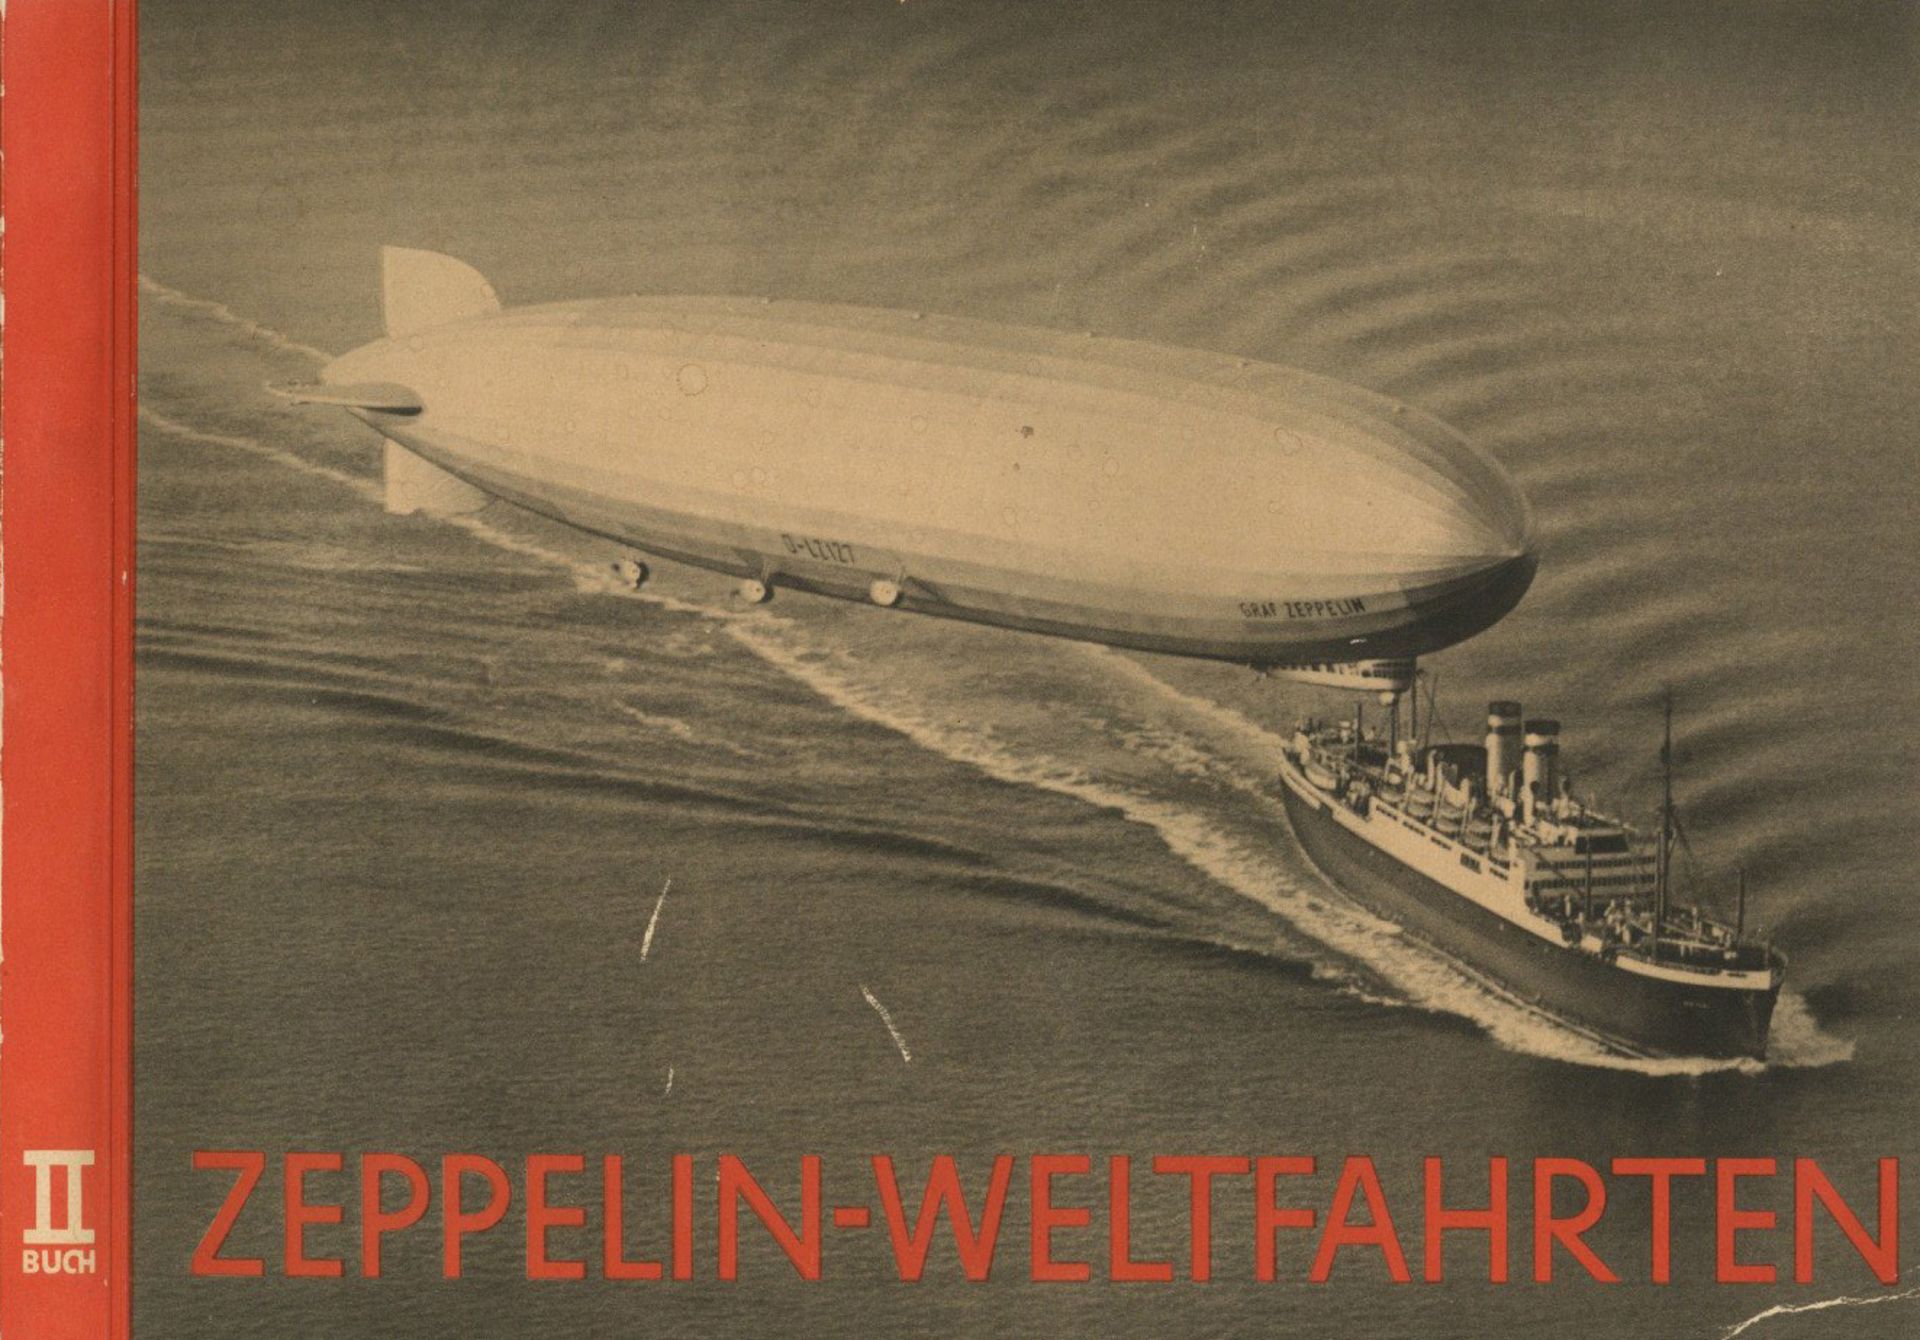 Sammelbild-Album Zeppelin Weltfahrten II. Buch 1935, Bilderstelle Lohse Dresden, komplett mit 155